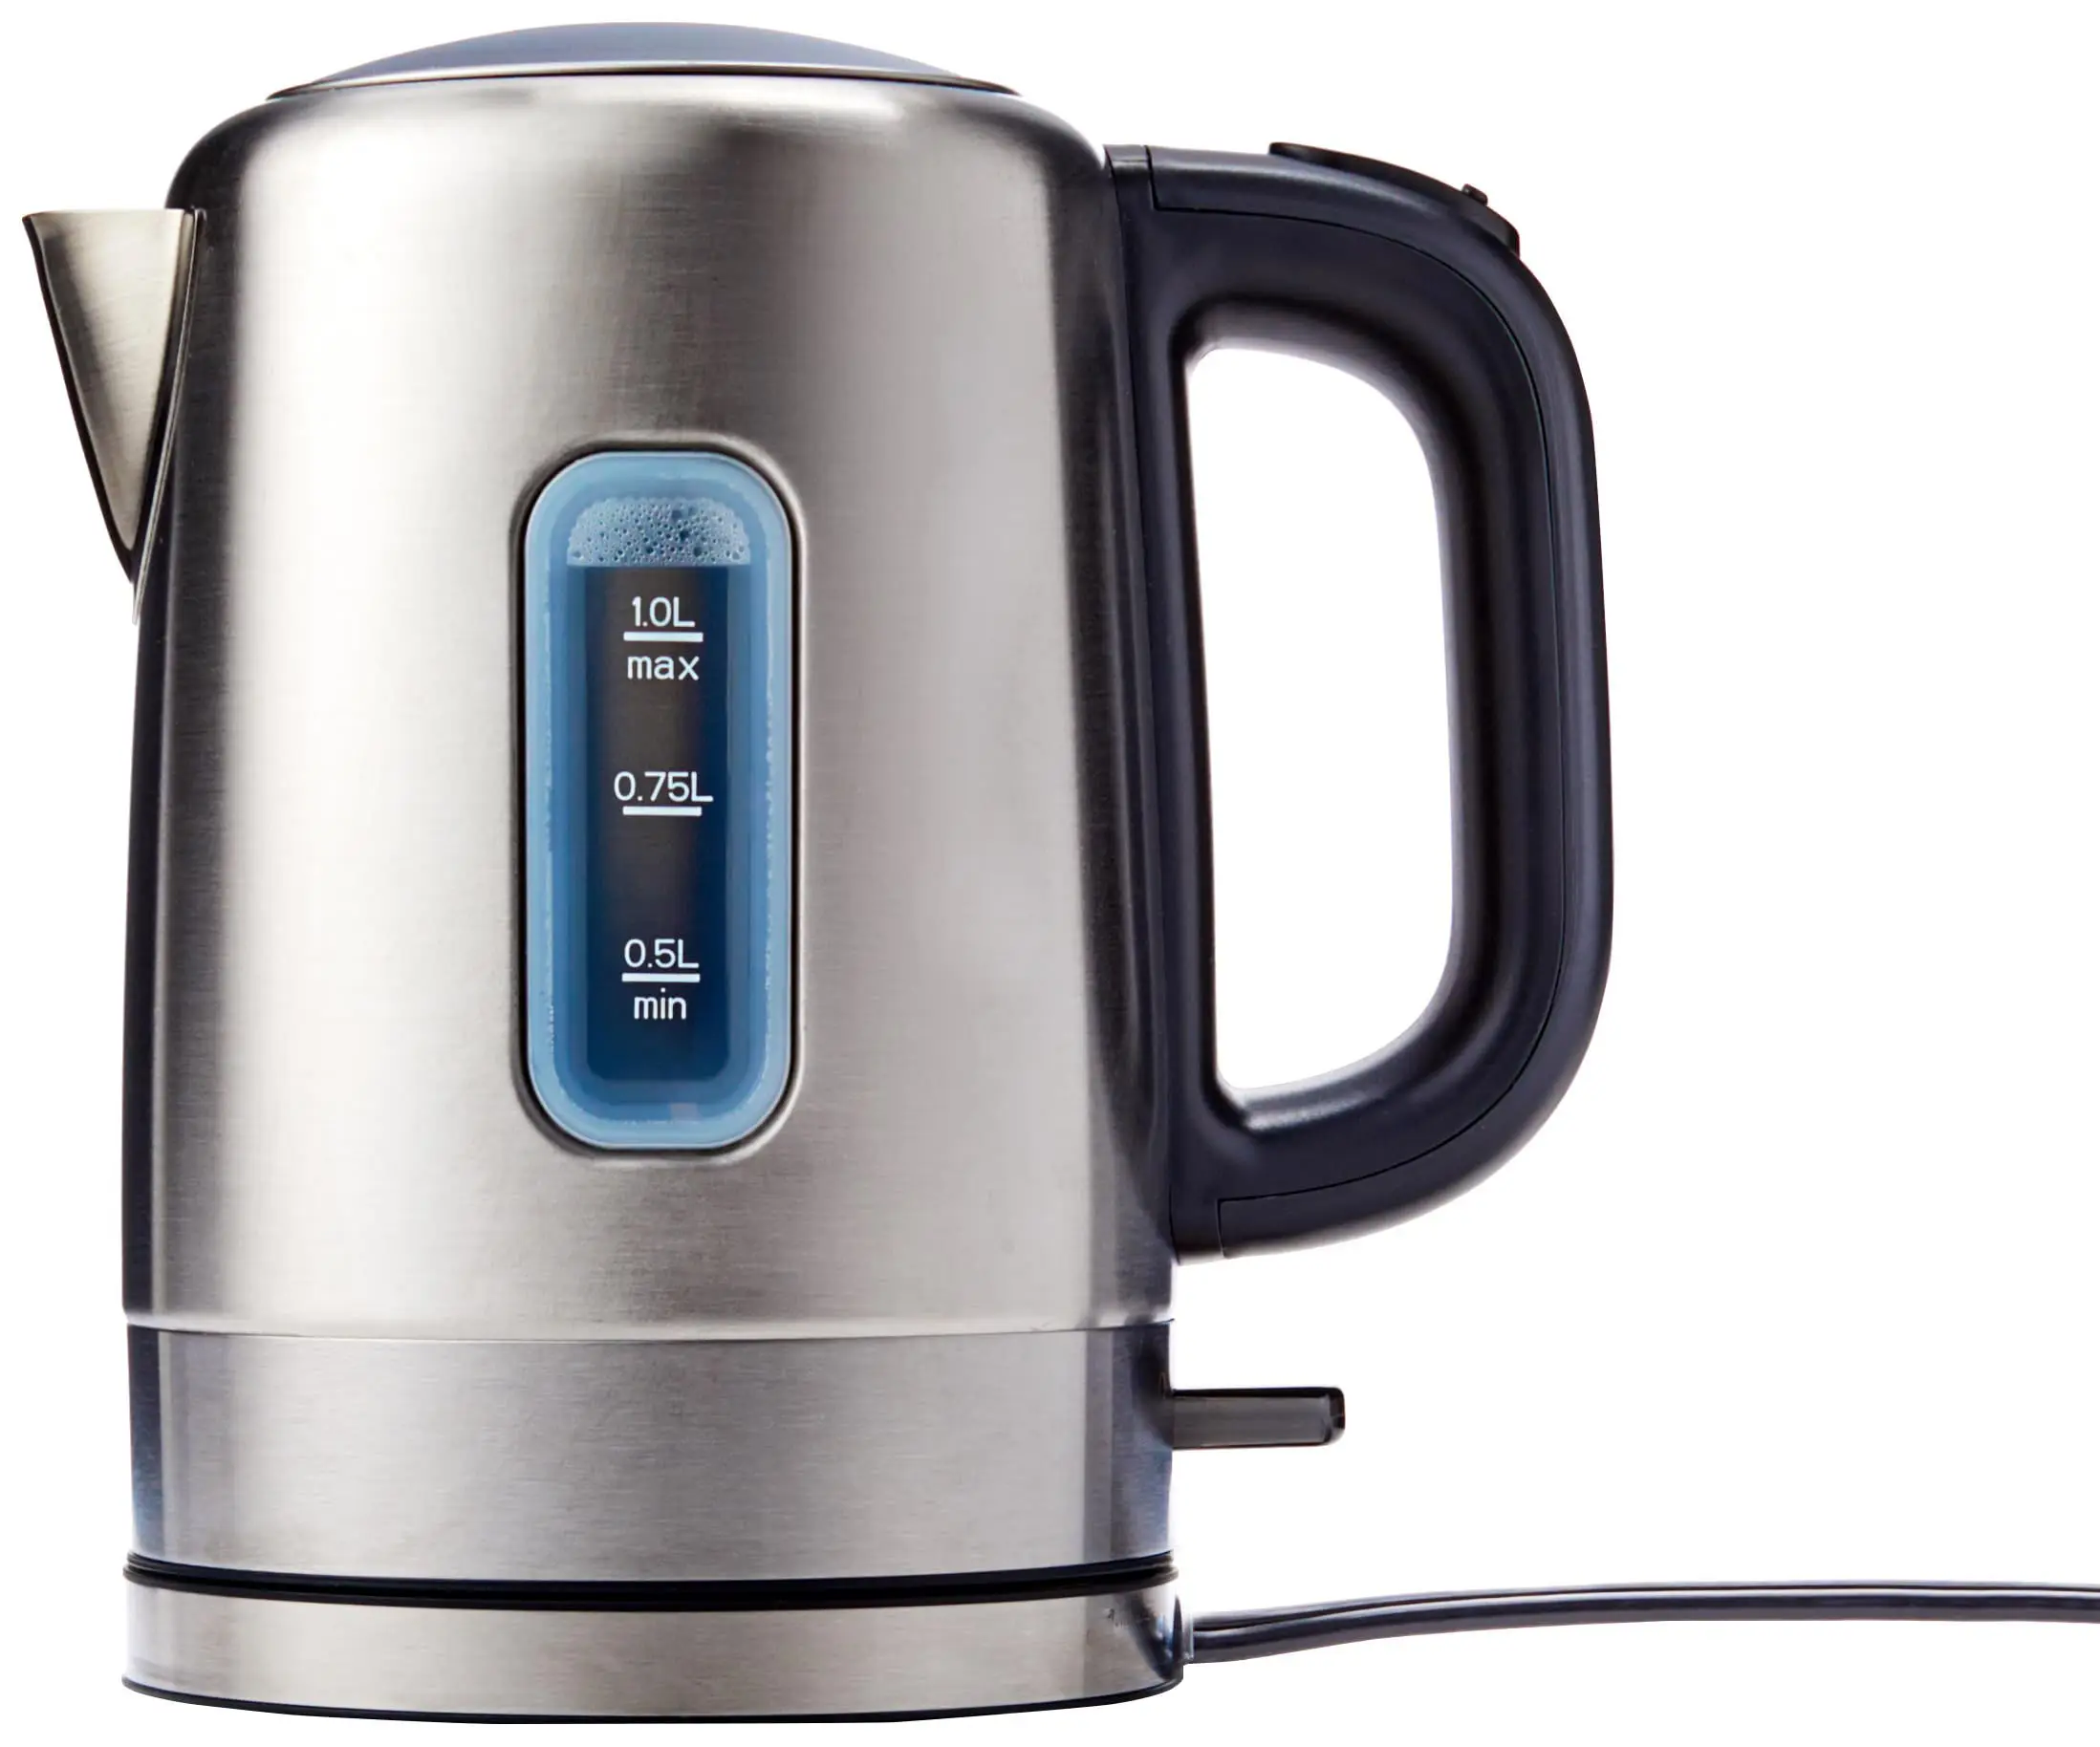 Chaleira elétrica portátil de aço inoxidável rápida para chá e café, desligamento automático, 1 litro, preta e tira